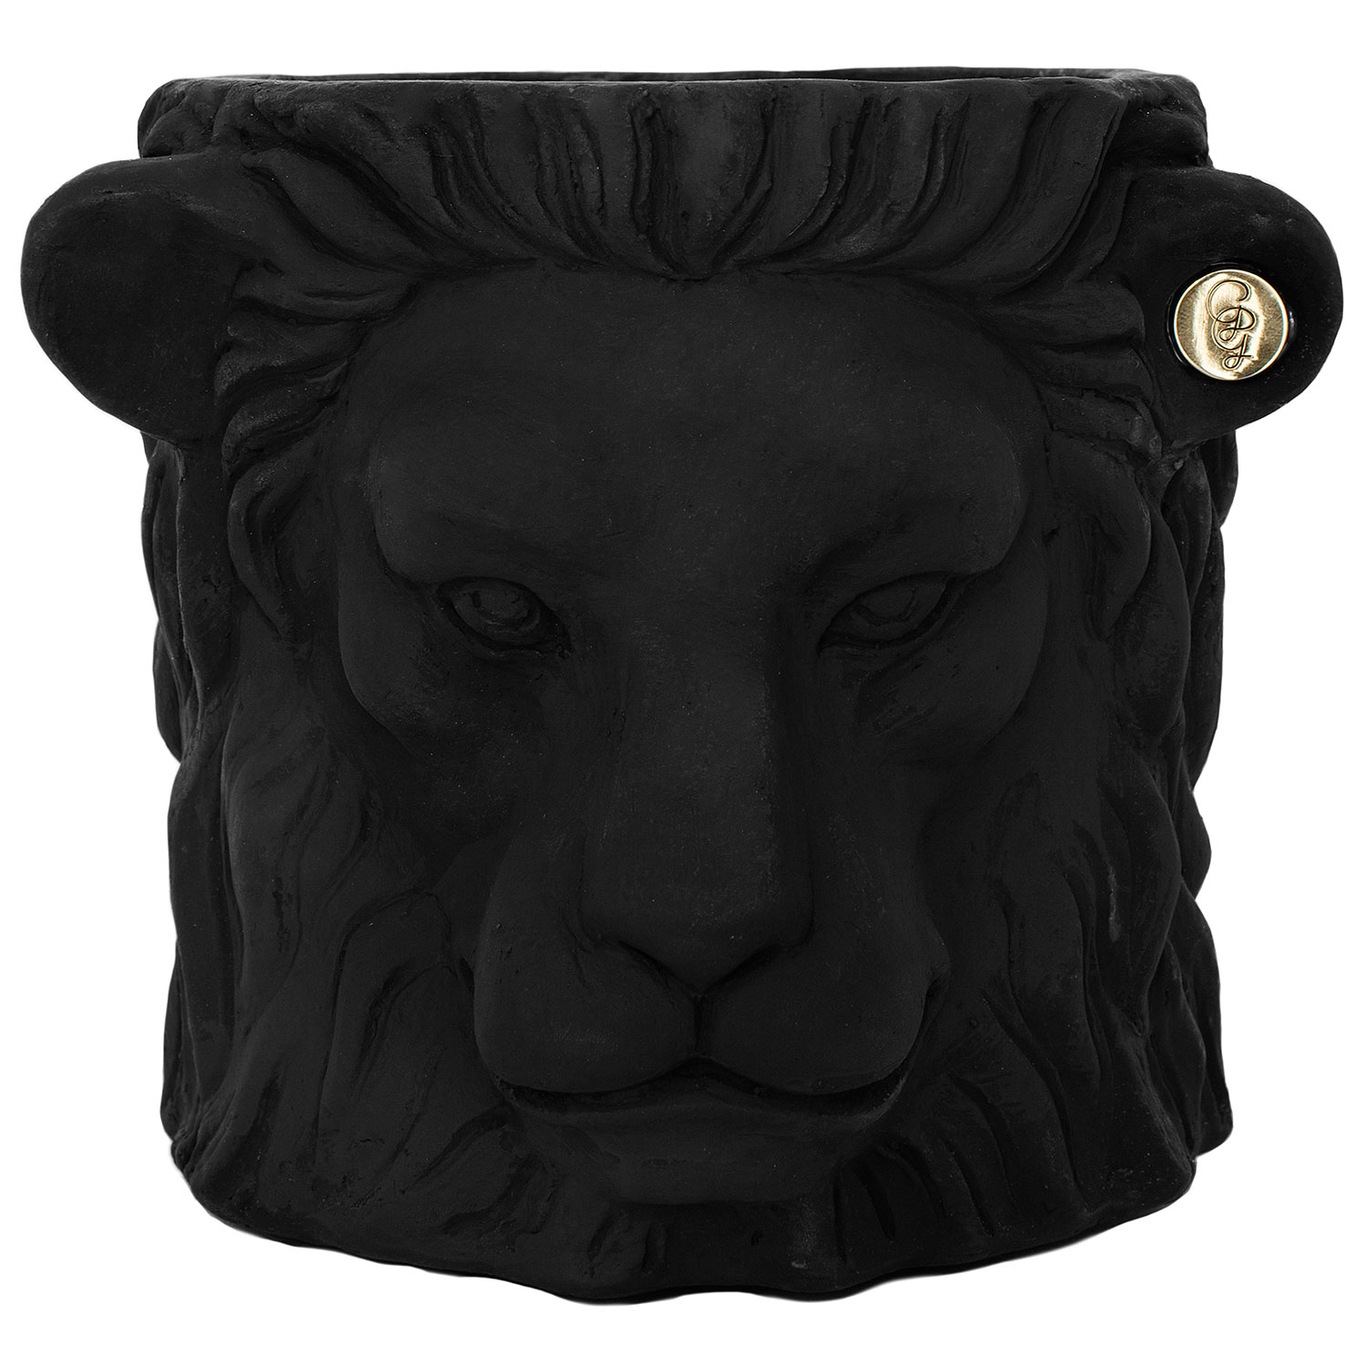 Lion Pot S, Black